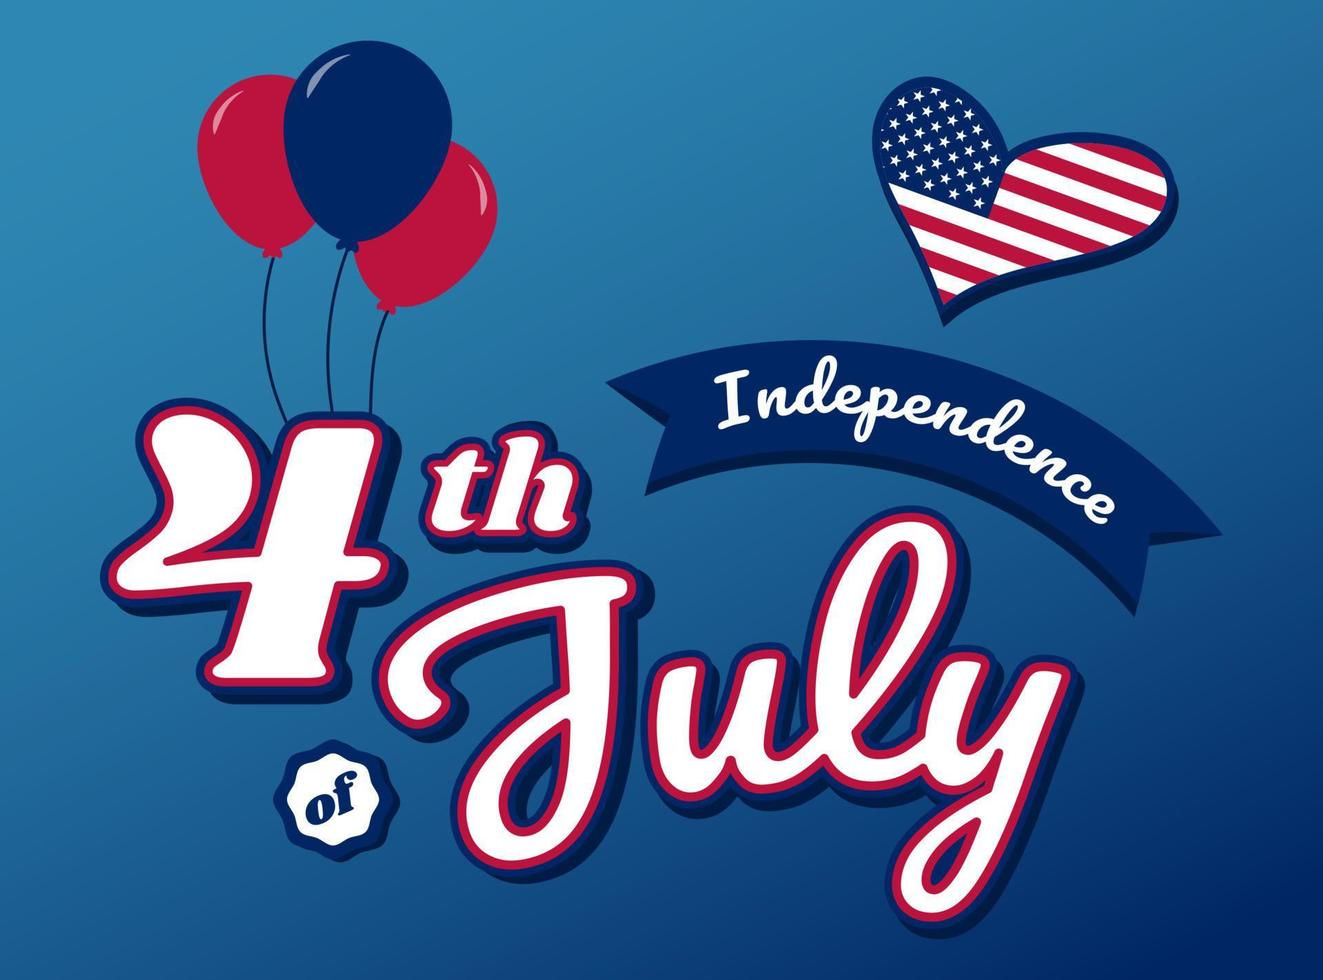 nosotros monumento día patriota orgulloso etiqueta americano bandera y símbolos nacional independencia día 4to julio vector